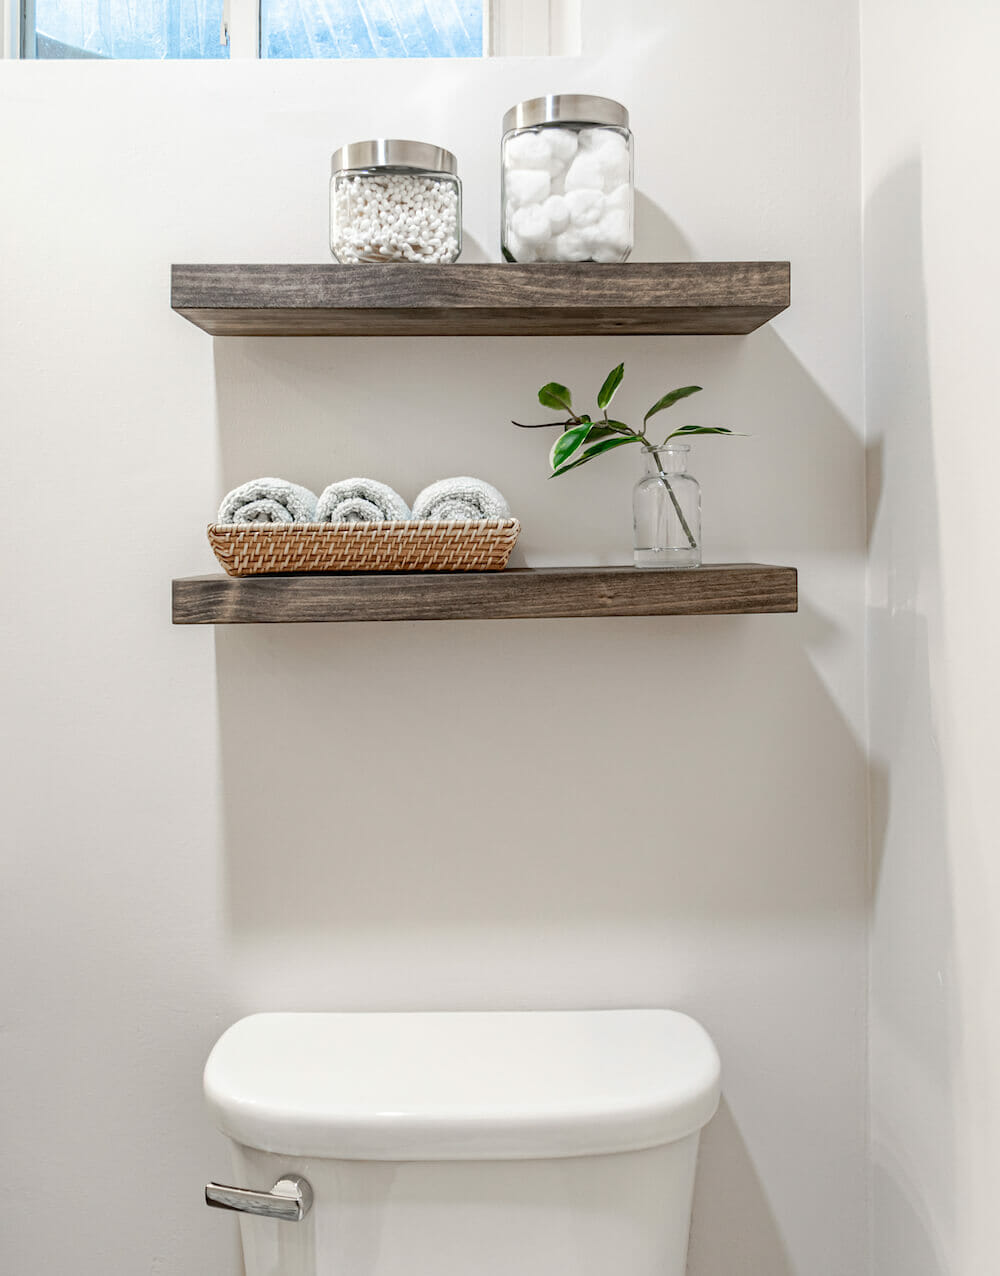 Image of open wooden shelves in bathroom